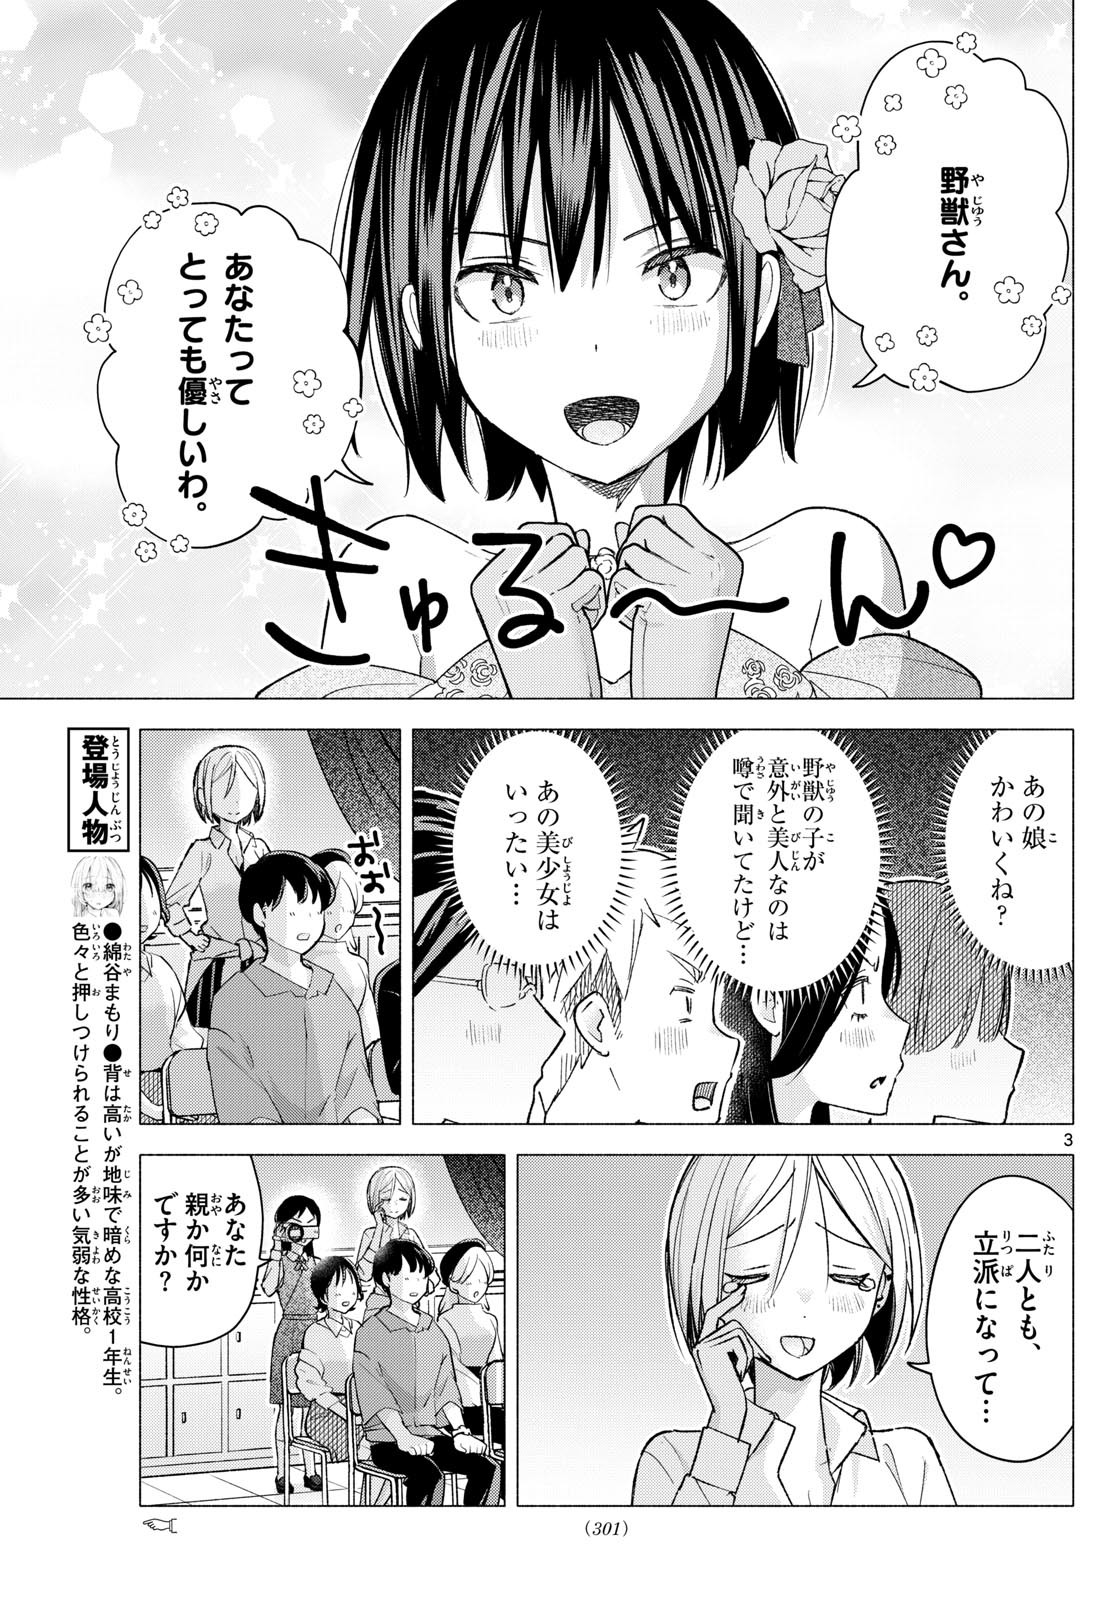 Kimi to Warui Koto ga Shitai - Chapter 064 - Page 3